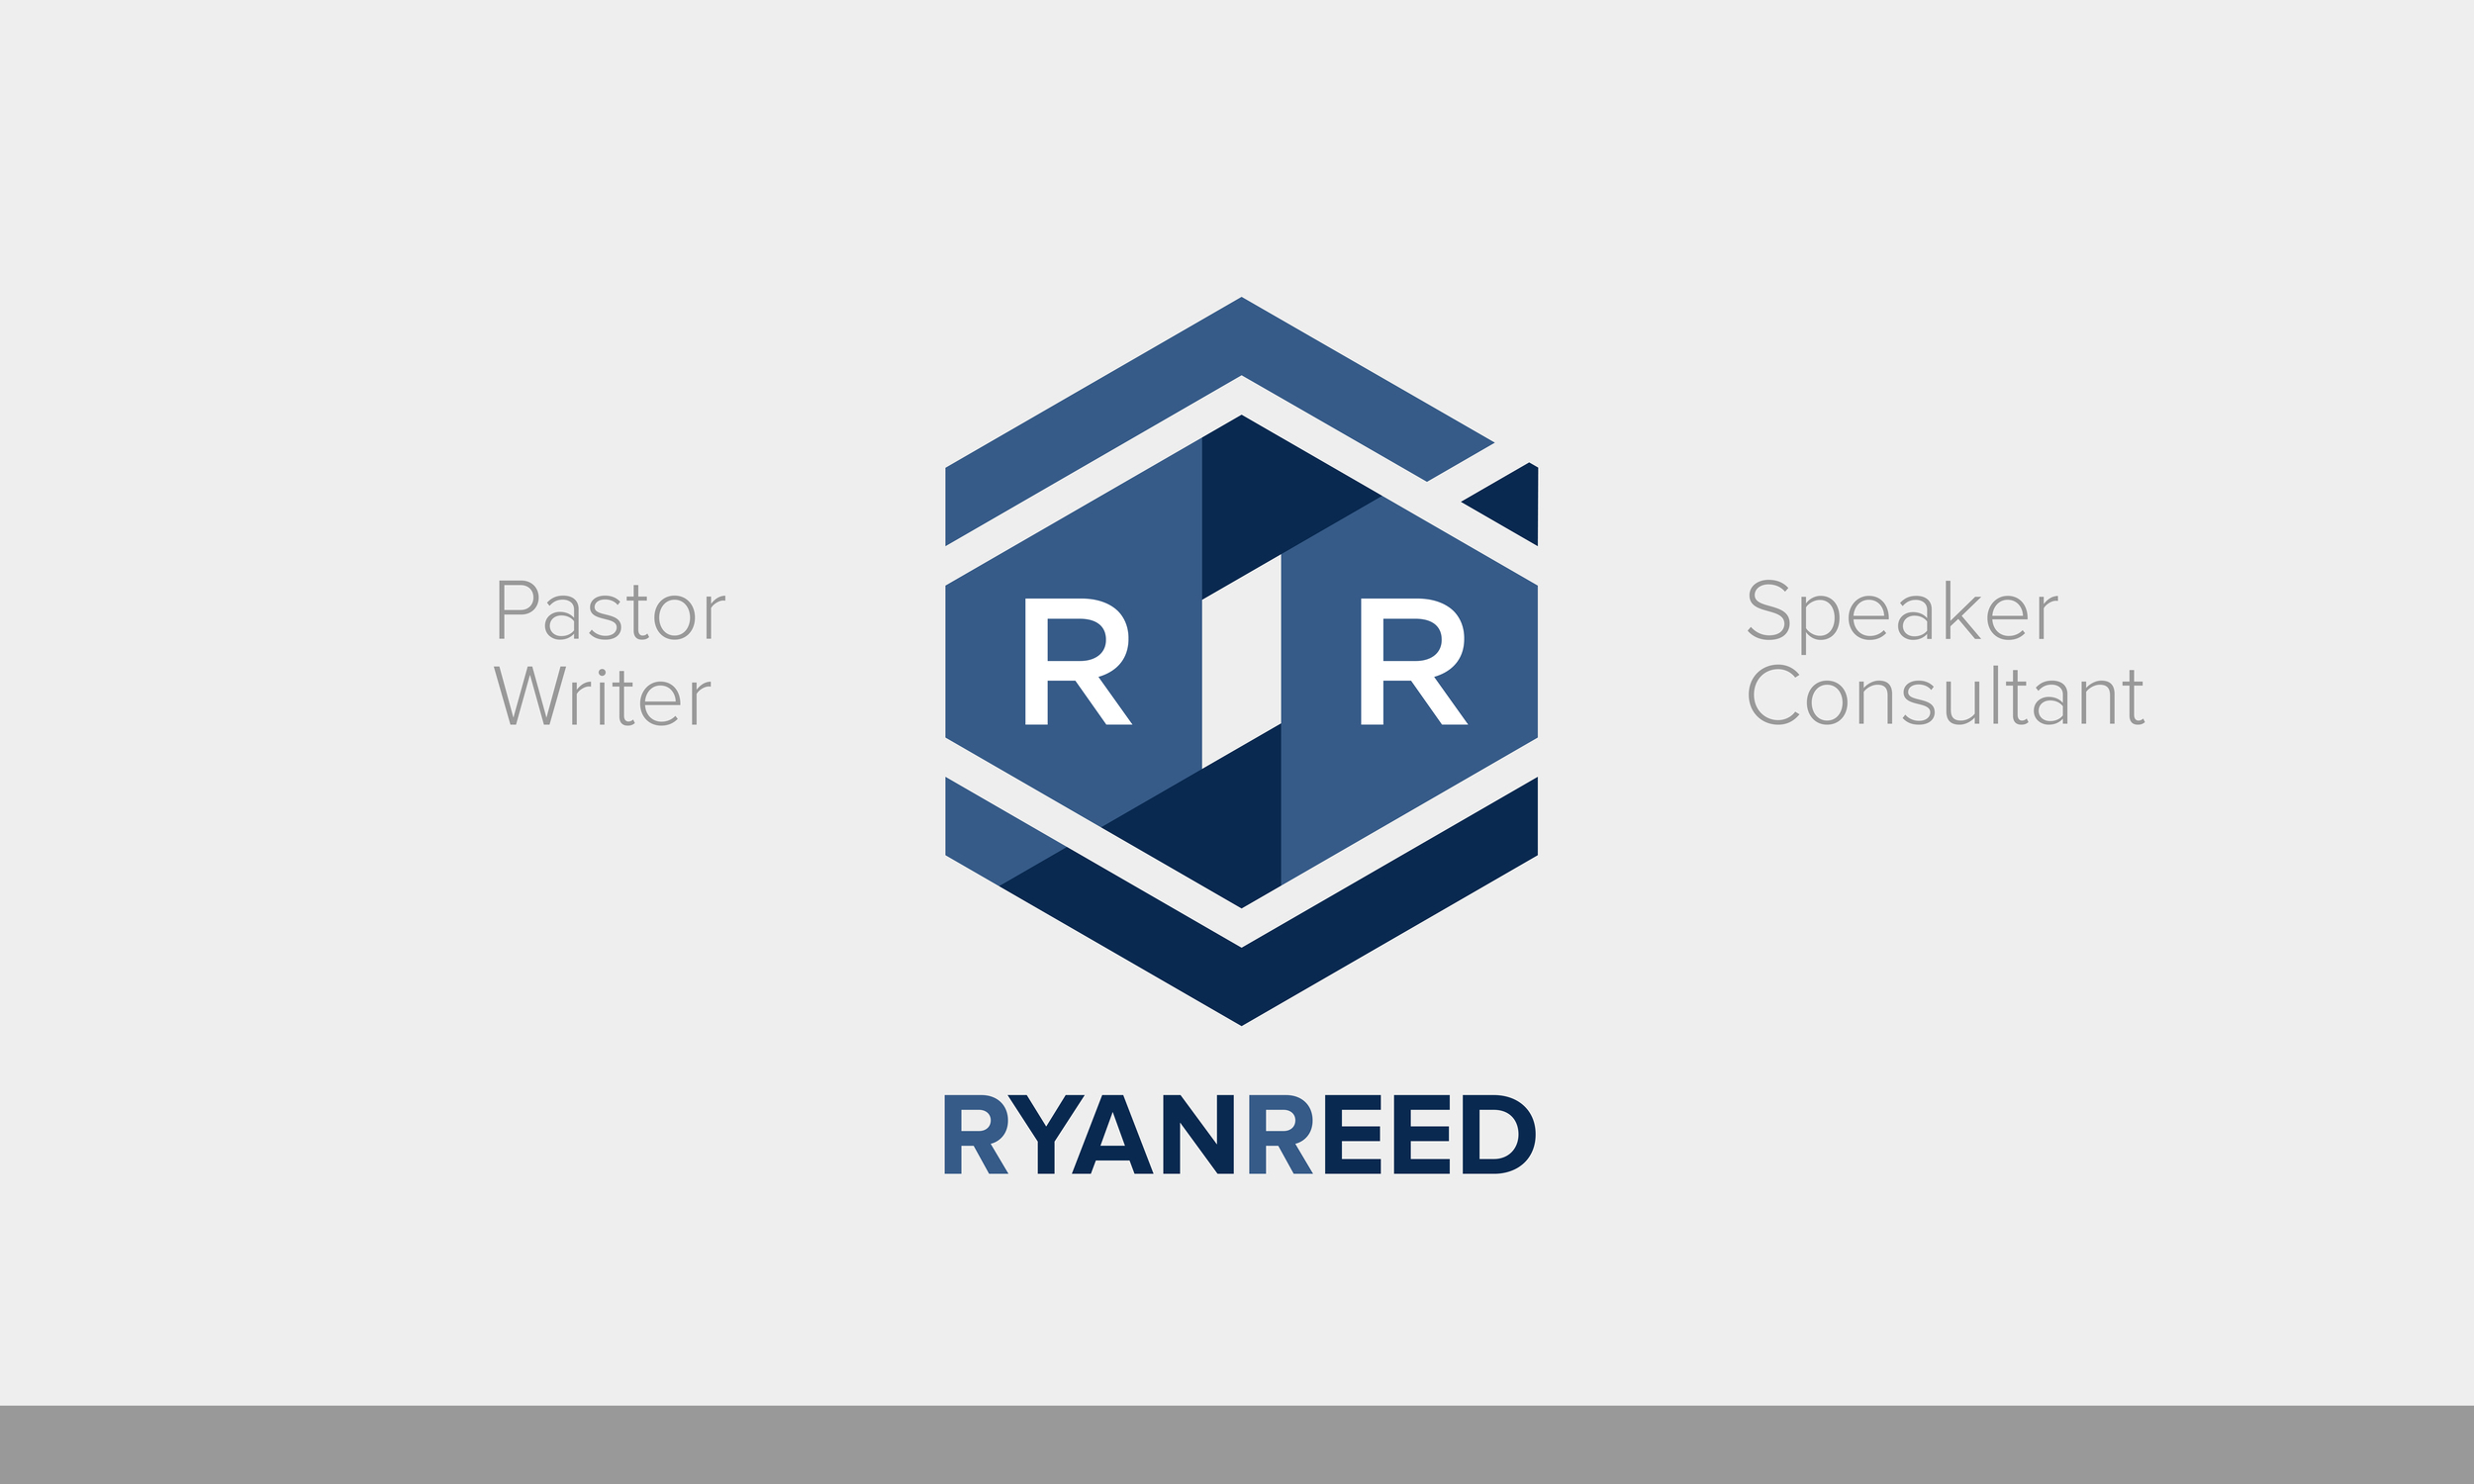 Ryan_reed_logo_type_Splash_superflat-01.jpg